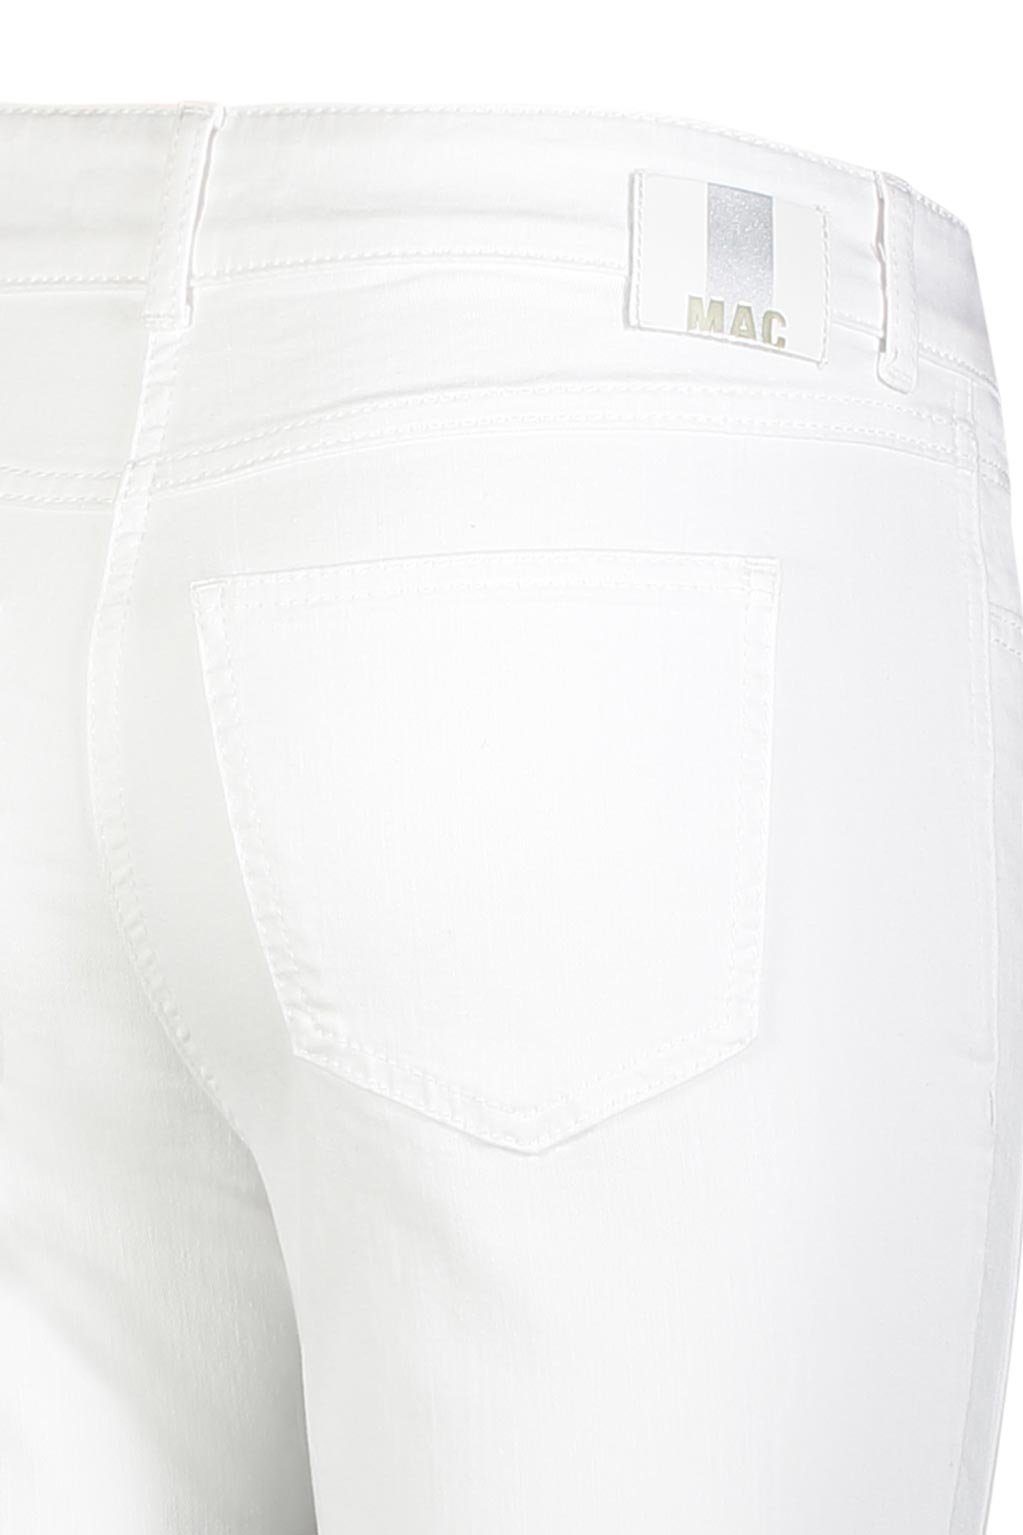 MAC Stretch-Jeans ANGELA SUMMER clean 5249-90-0392L white 7/8 MAC D010 denim